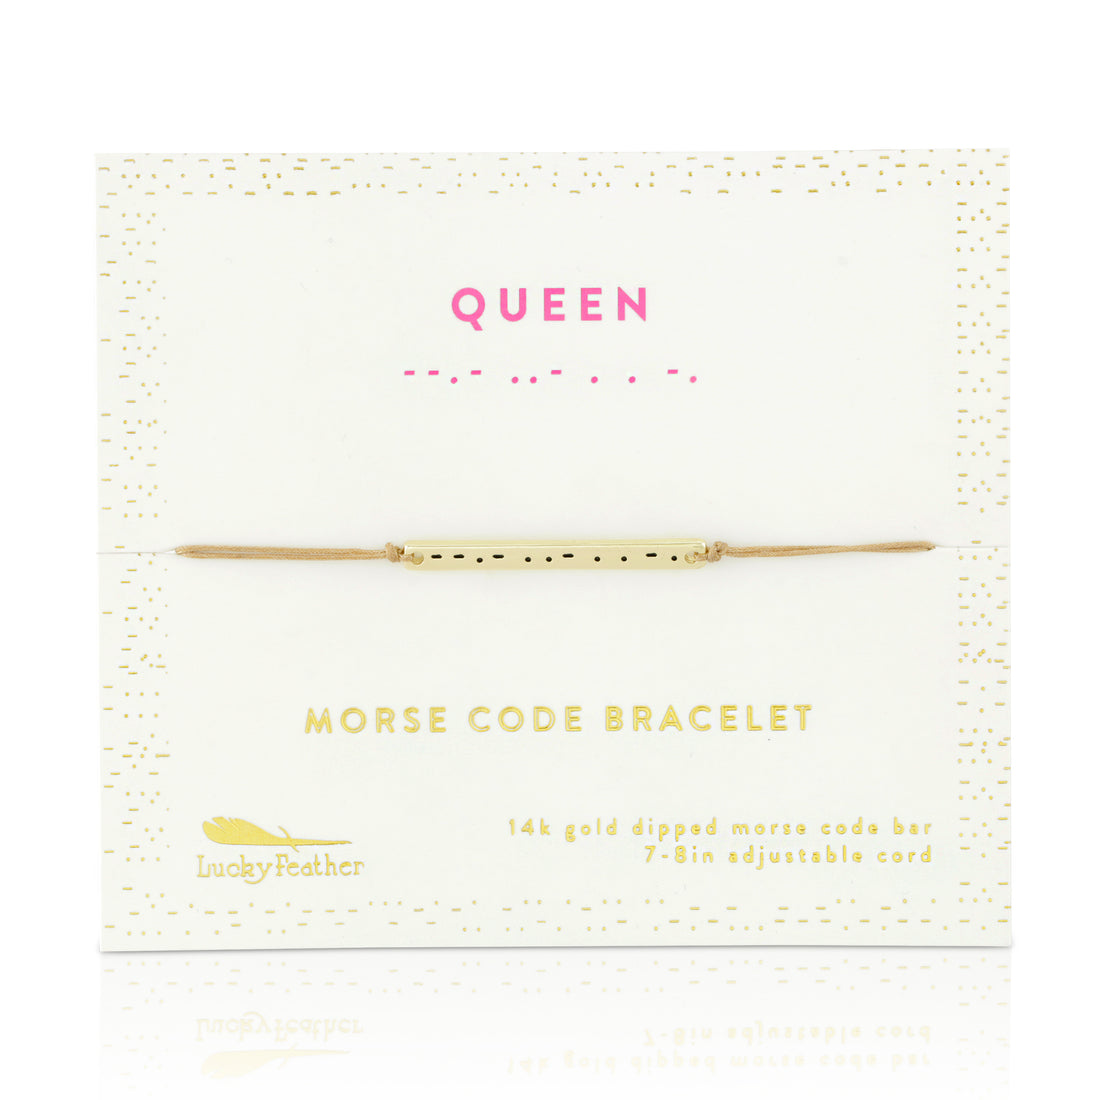 Morse Code Bracelet - Queen